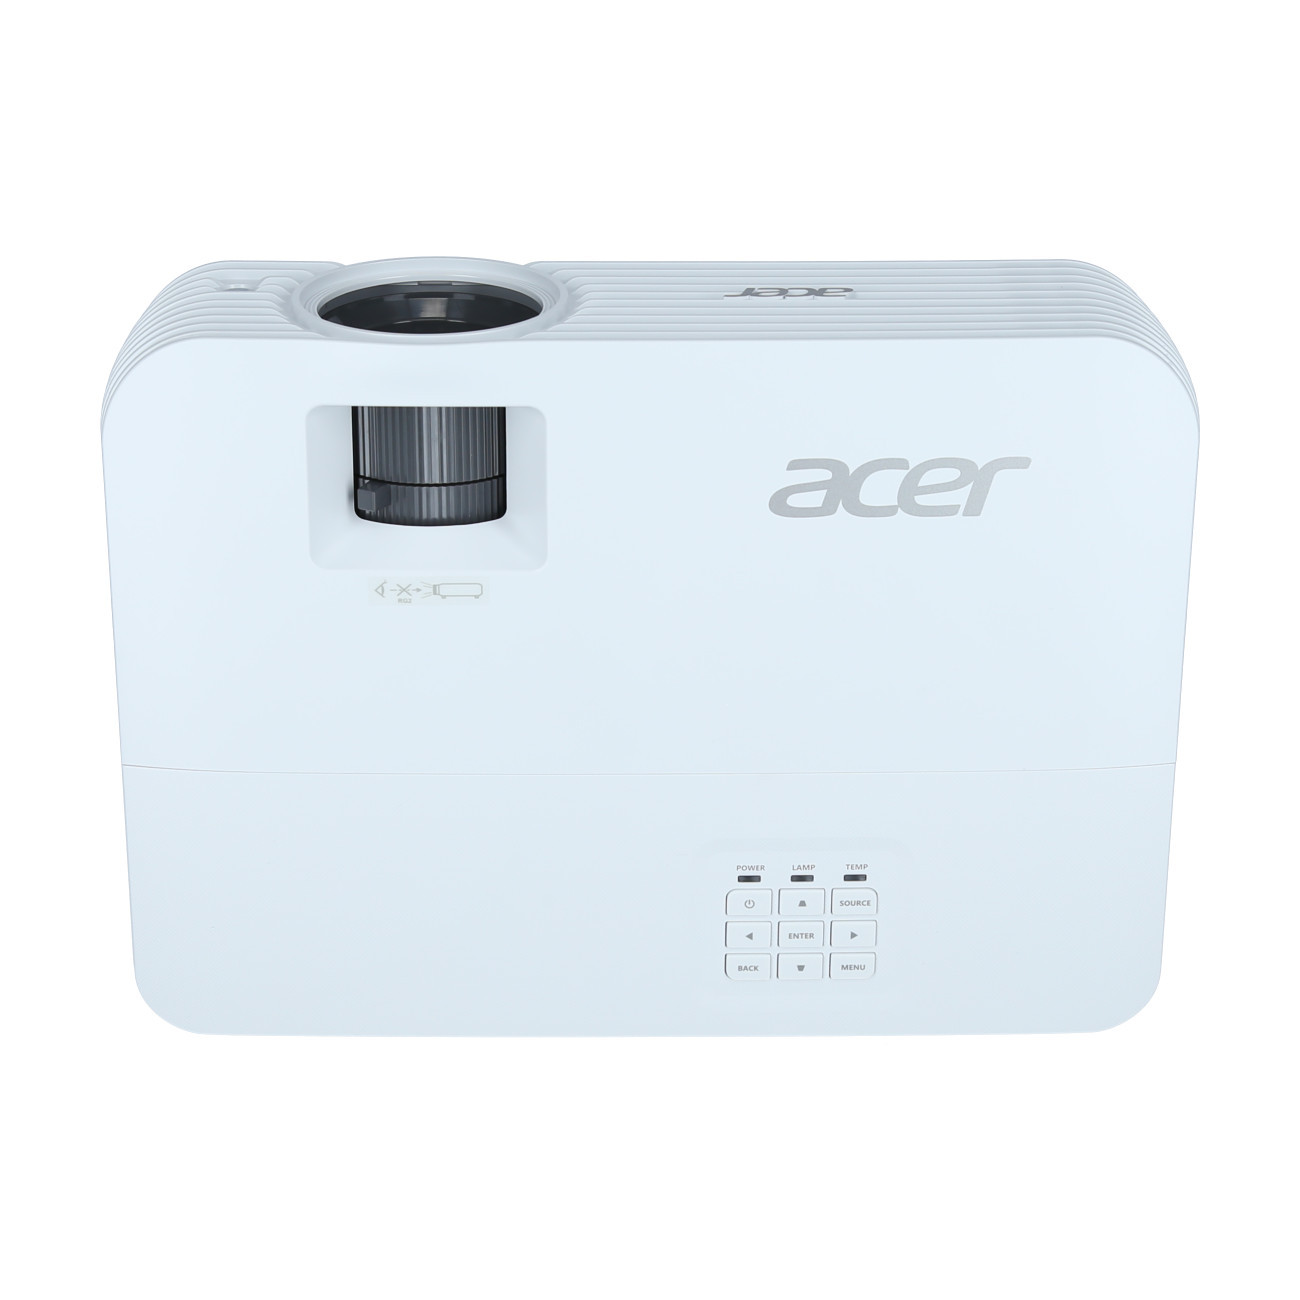 Vorschau: Acer H6543BDK - Heimkino-Beamer mit 4500 ANSI-Lumen und Full-HD Auflösung - Demo